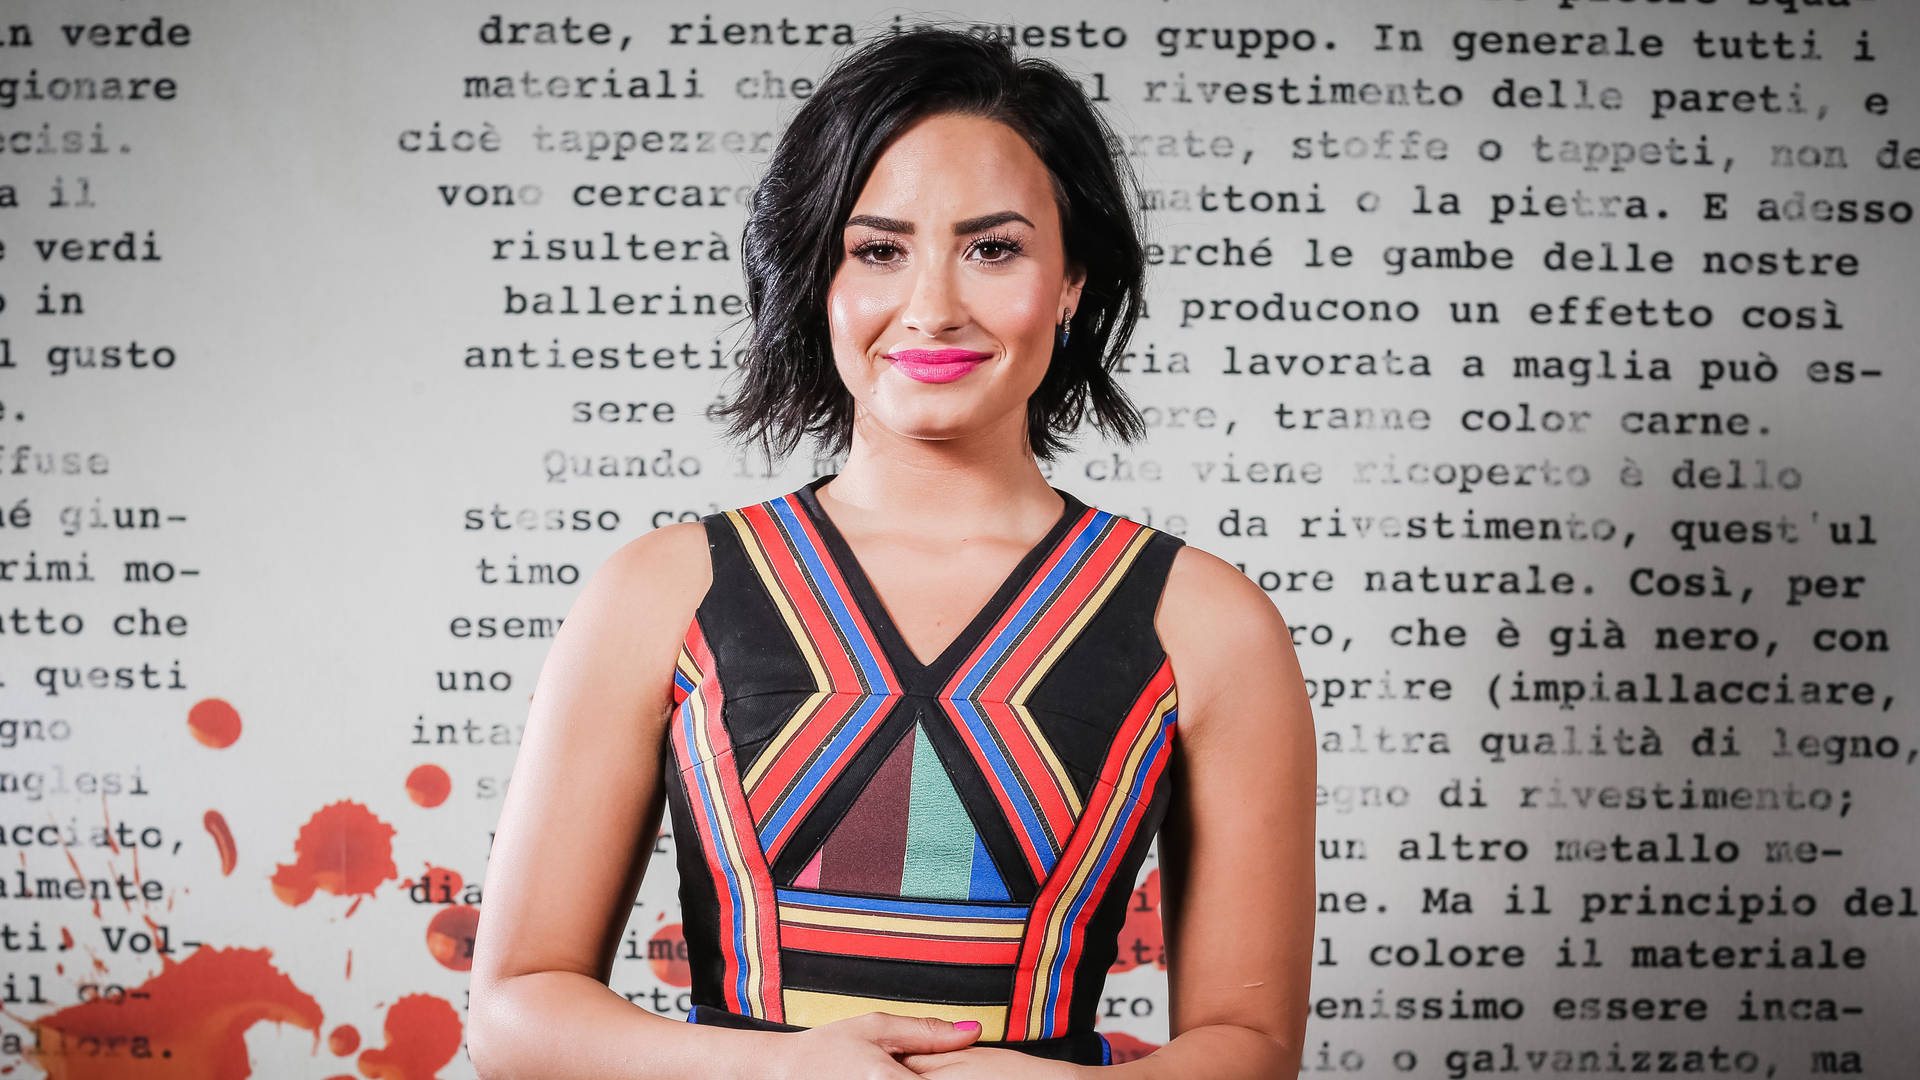 A Very Pretty Demi Lovato Wallpaper